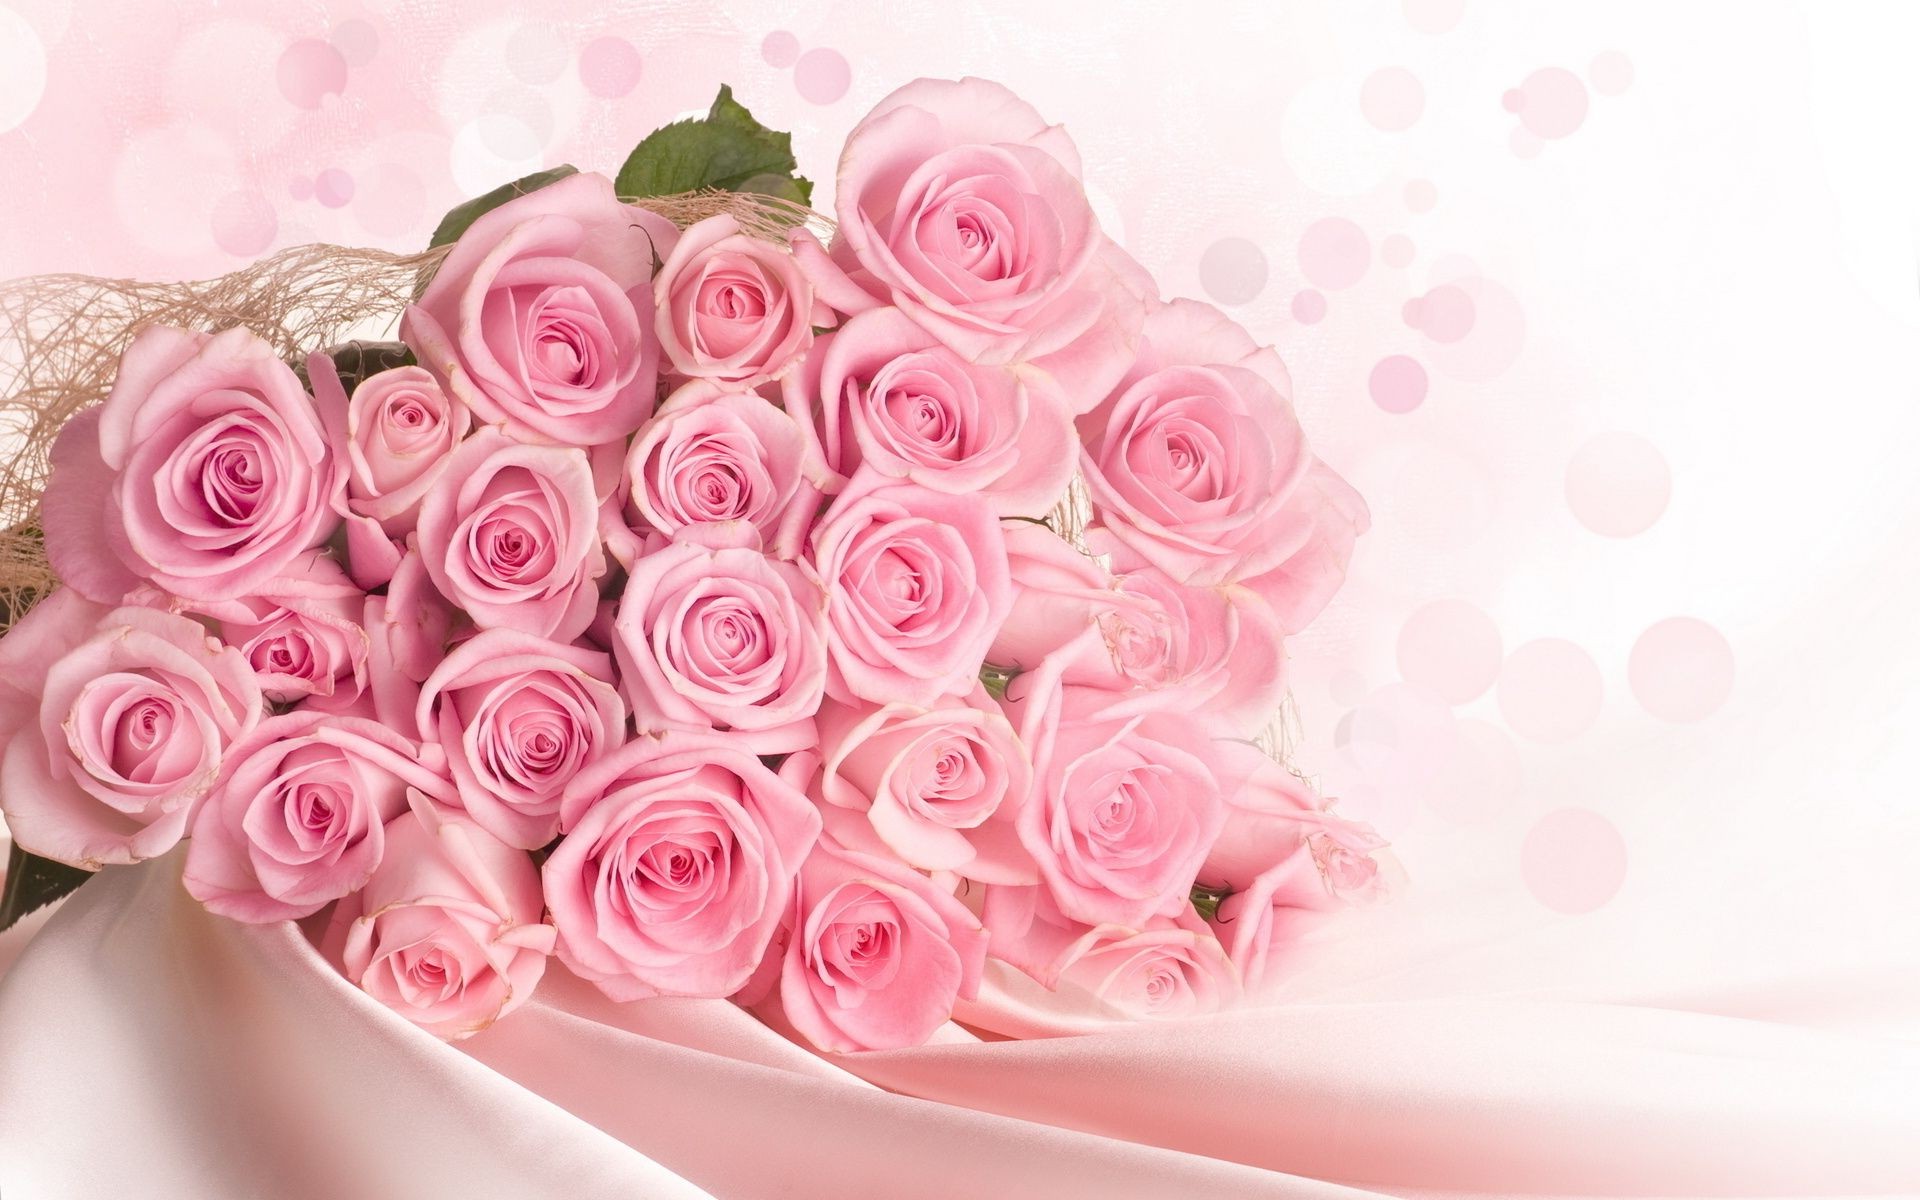 букет цветов роза свадьба цветочные цветок букет романтика романтический лепесток любовь брак подарок блюминг юбилей для новобрачных день рождения украшения праздник дружище невеста рабочего стола